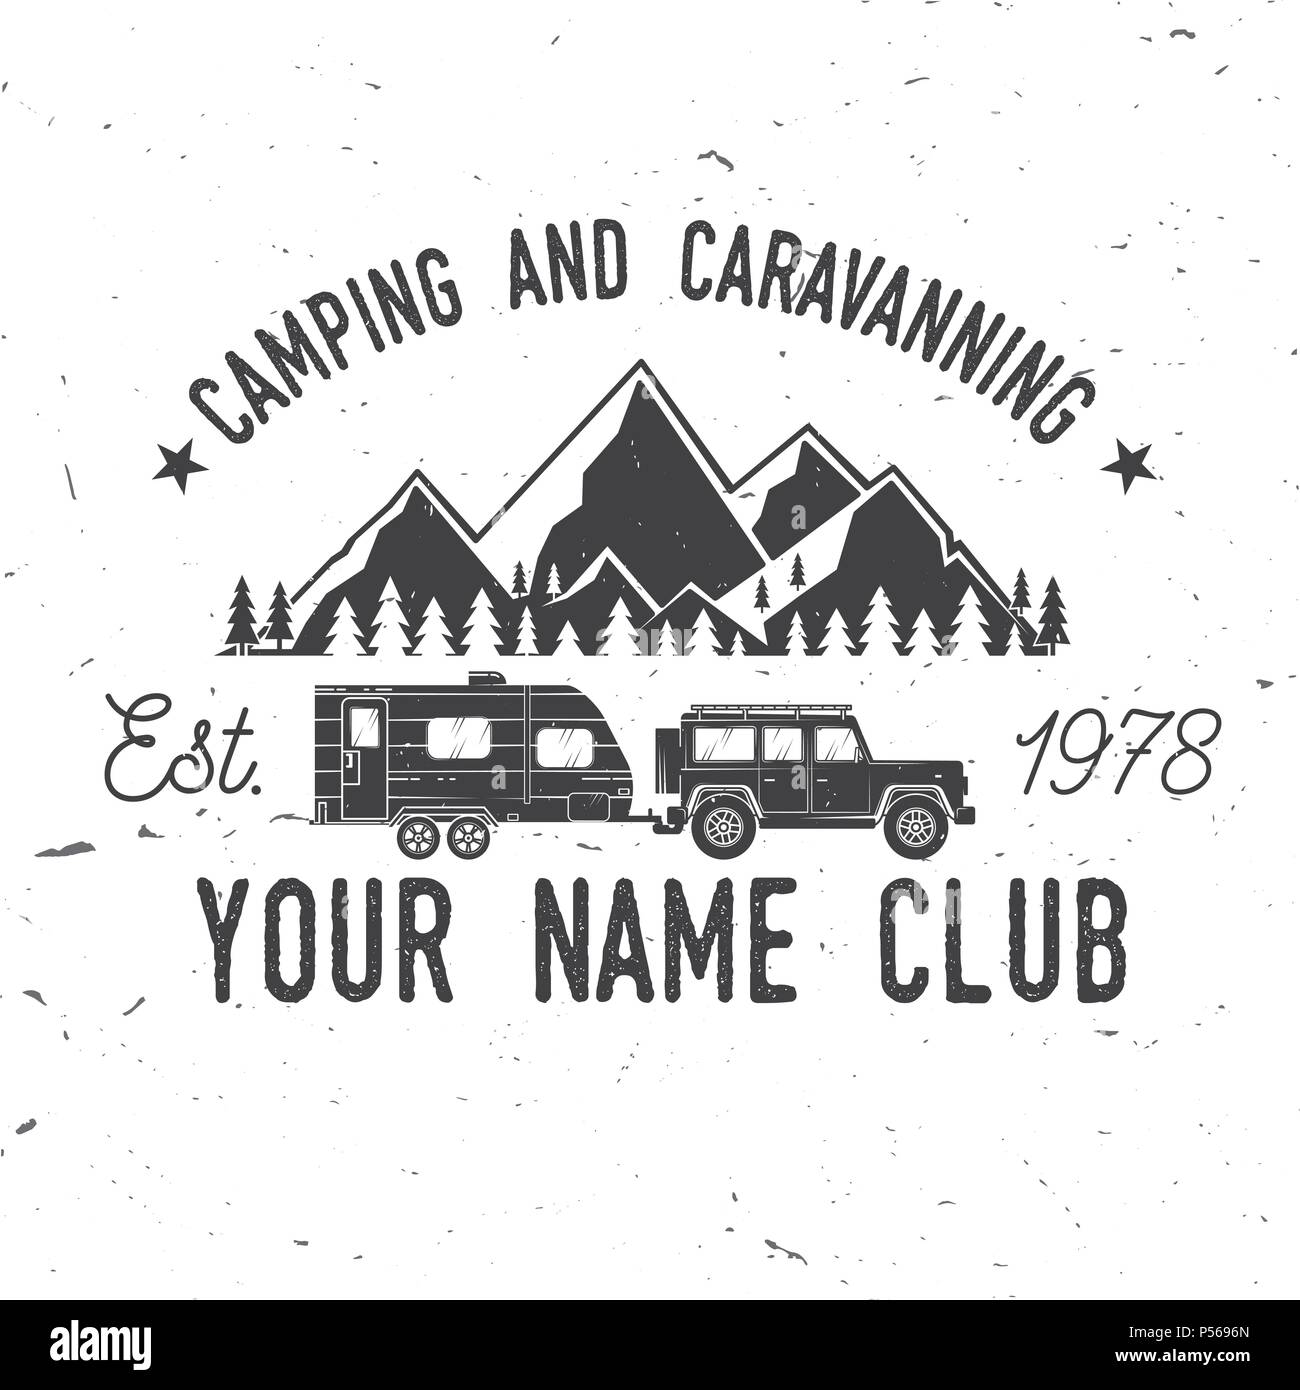 aufkleber für WOHNMOBILE und KLEINBUSSE Set Camper Van RV Caravan